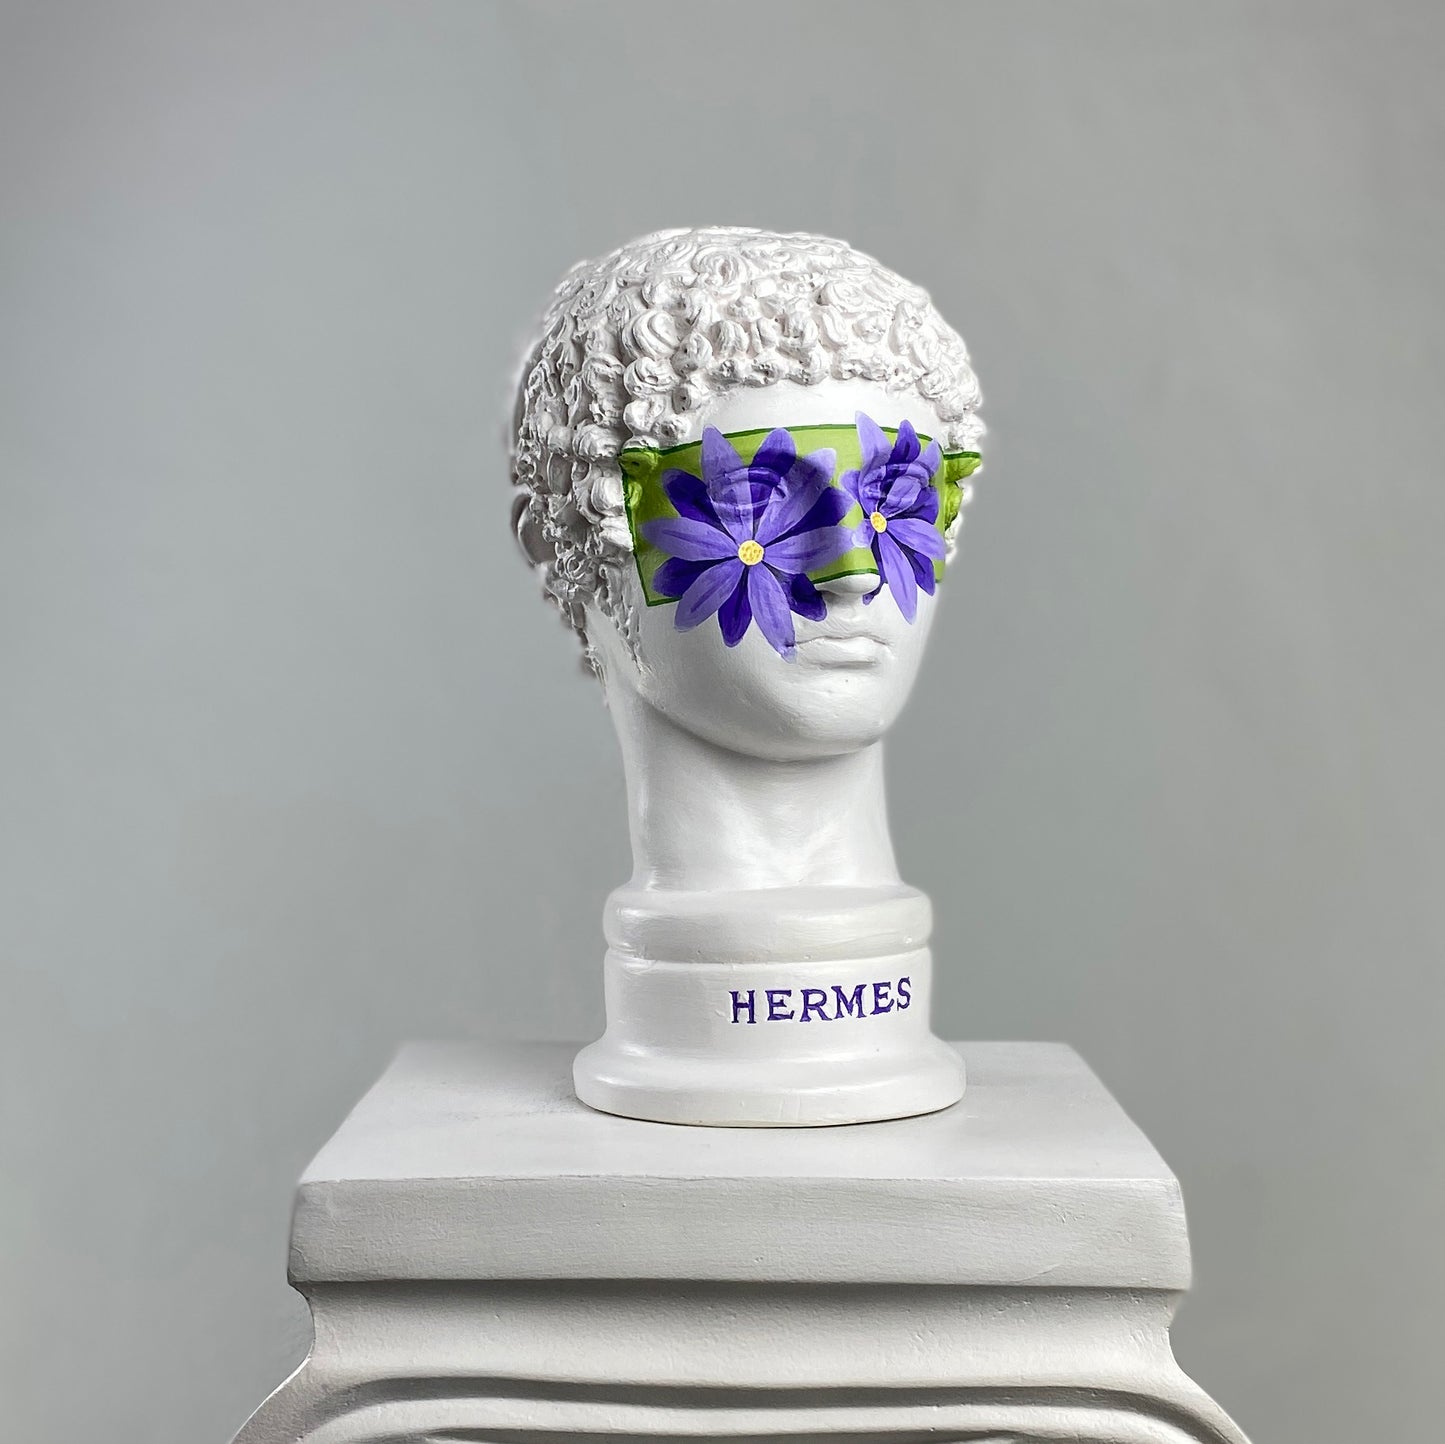 Hermes 'Bloom' Pop Art Sculpture, Modern Home Decor